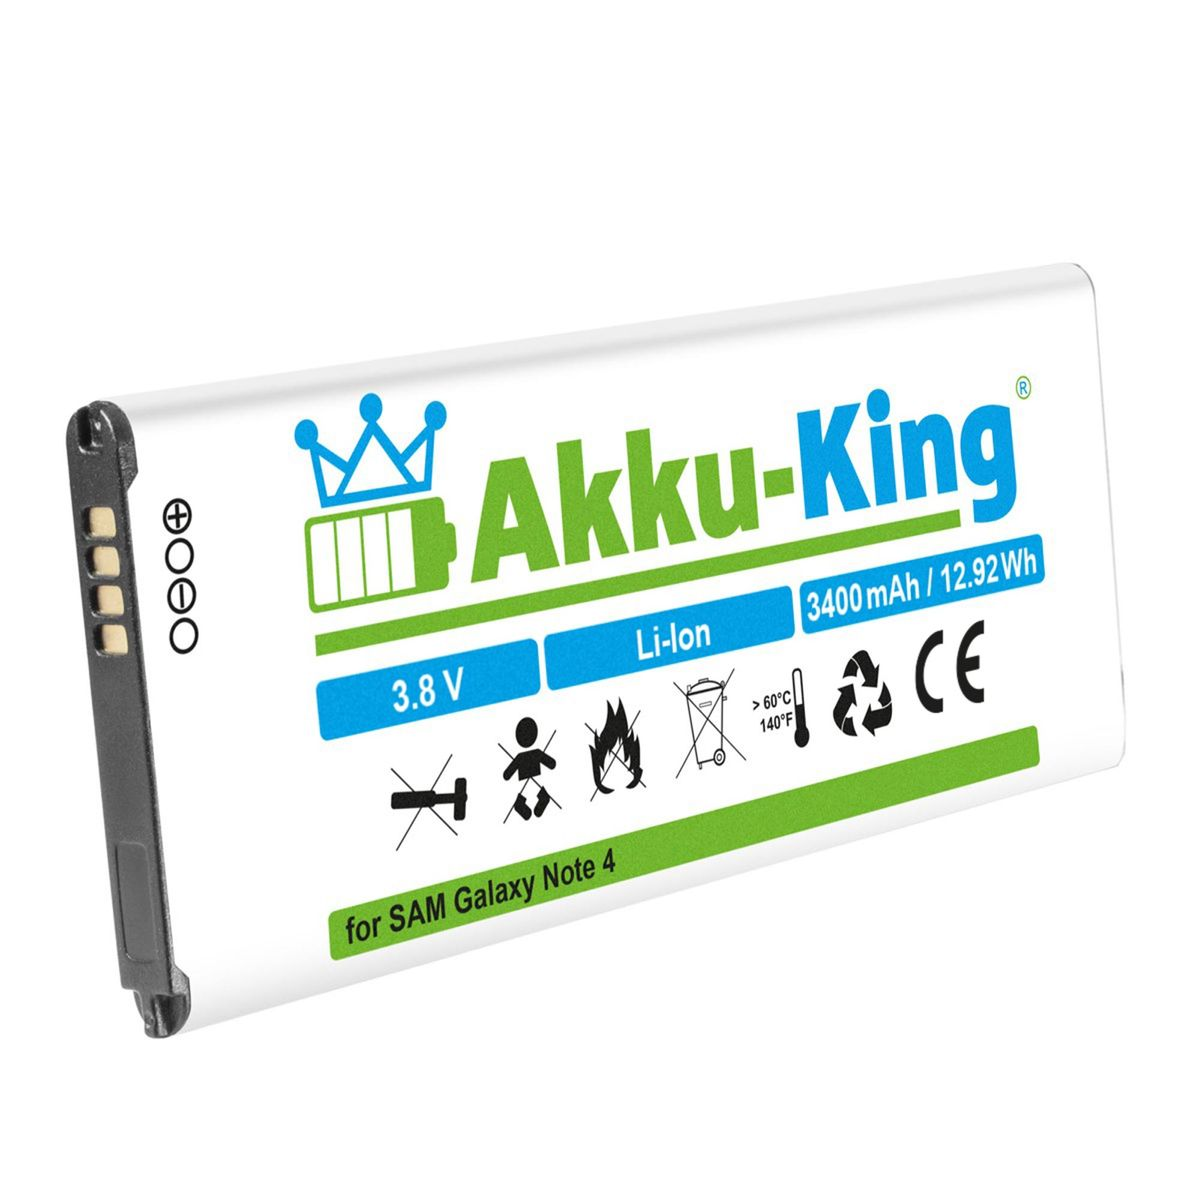 Volt, EB-BN910BBE Handy-Akku, kompatibel mit Li-Ion 3400mAh Samsung AKKU-KING Akku 3.8